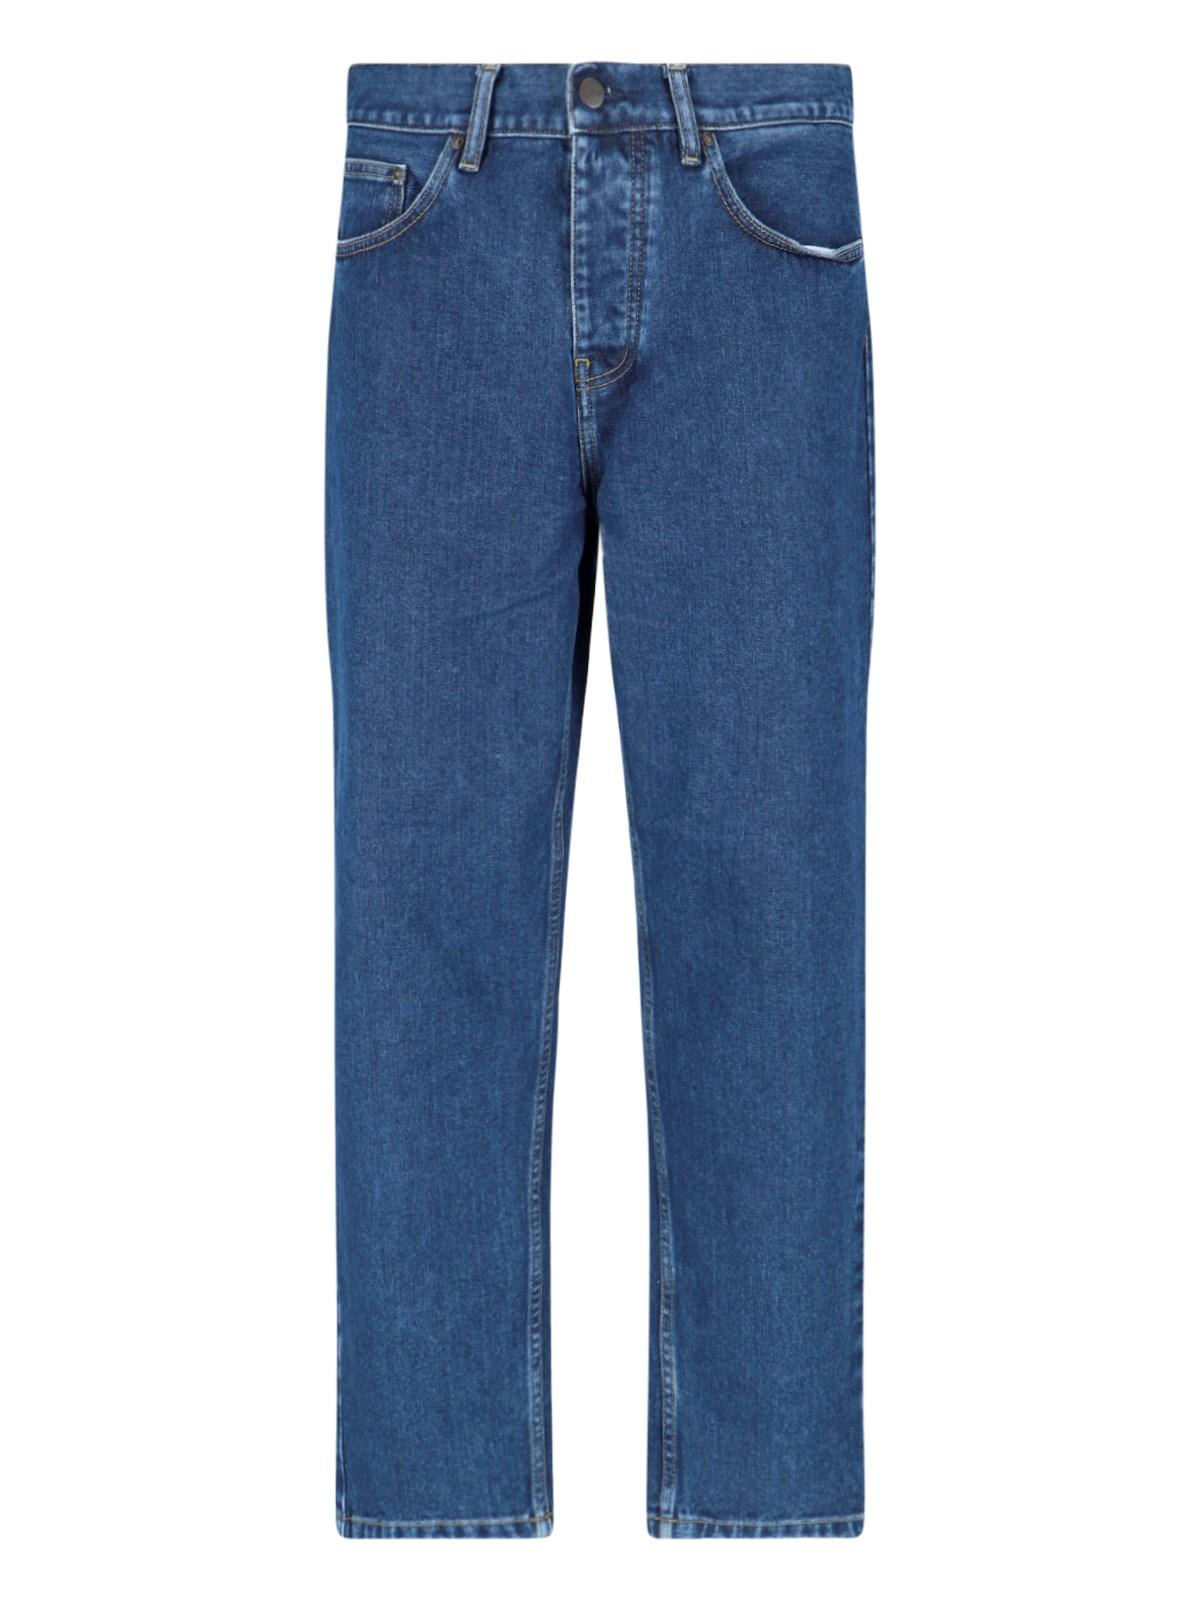 Shop Carhartt Newel Jeans In Blue